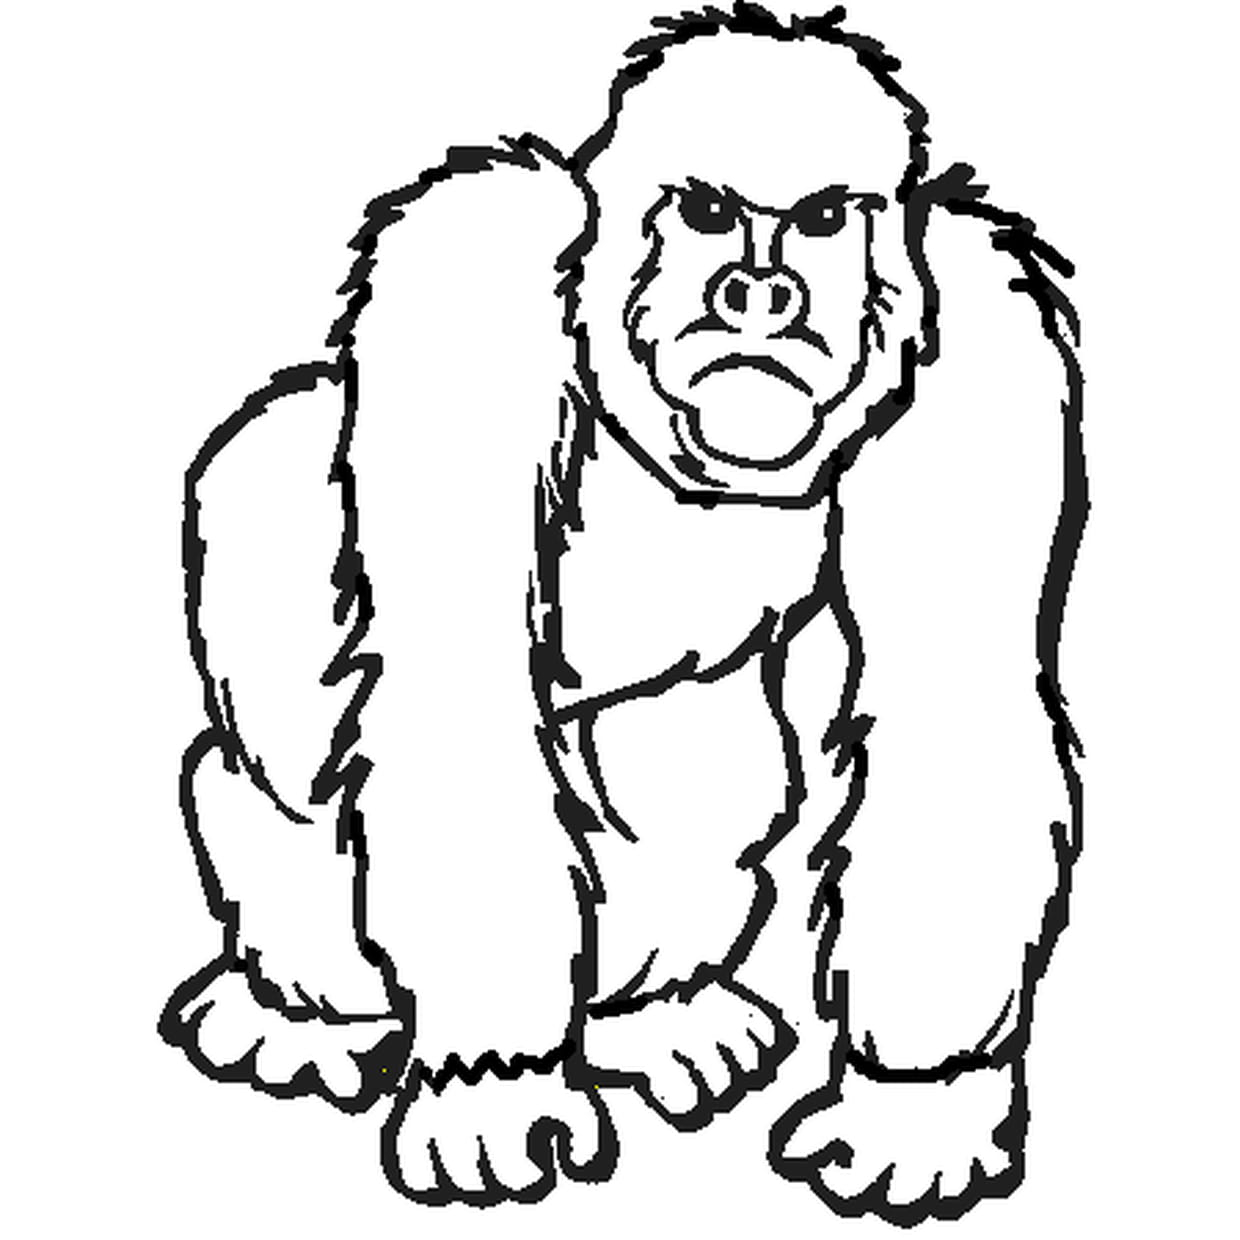 Coloriage Gorille Pas Content En Ligne Gratuit À Imprimer à Coloriage Gorille